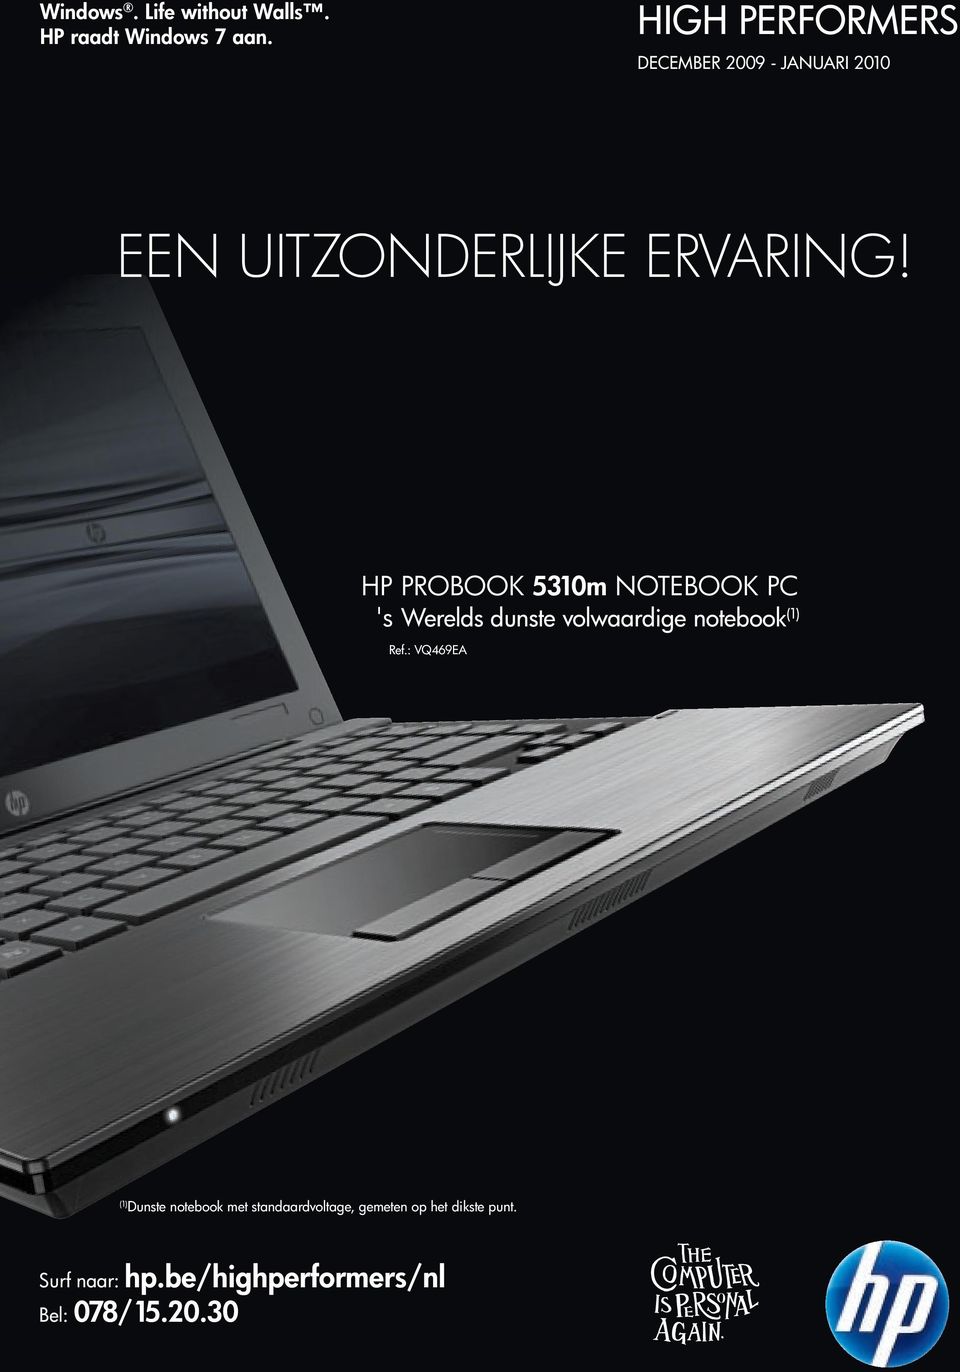 HP PROBOOK 50m NOTEBOOK PC 's Werelds dunste volwaardige notebook